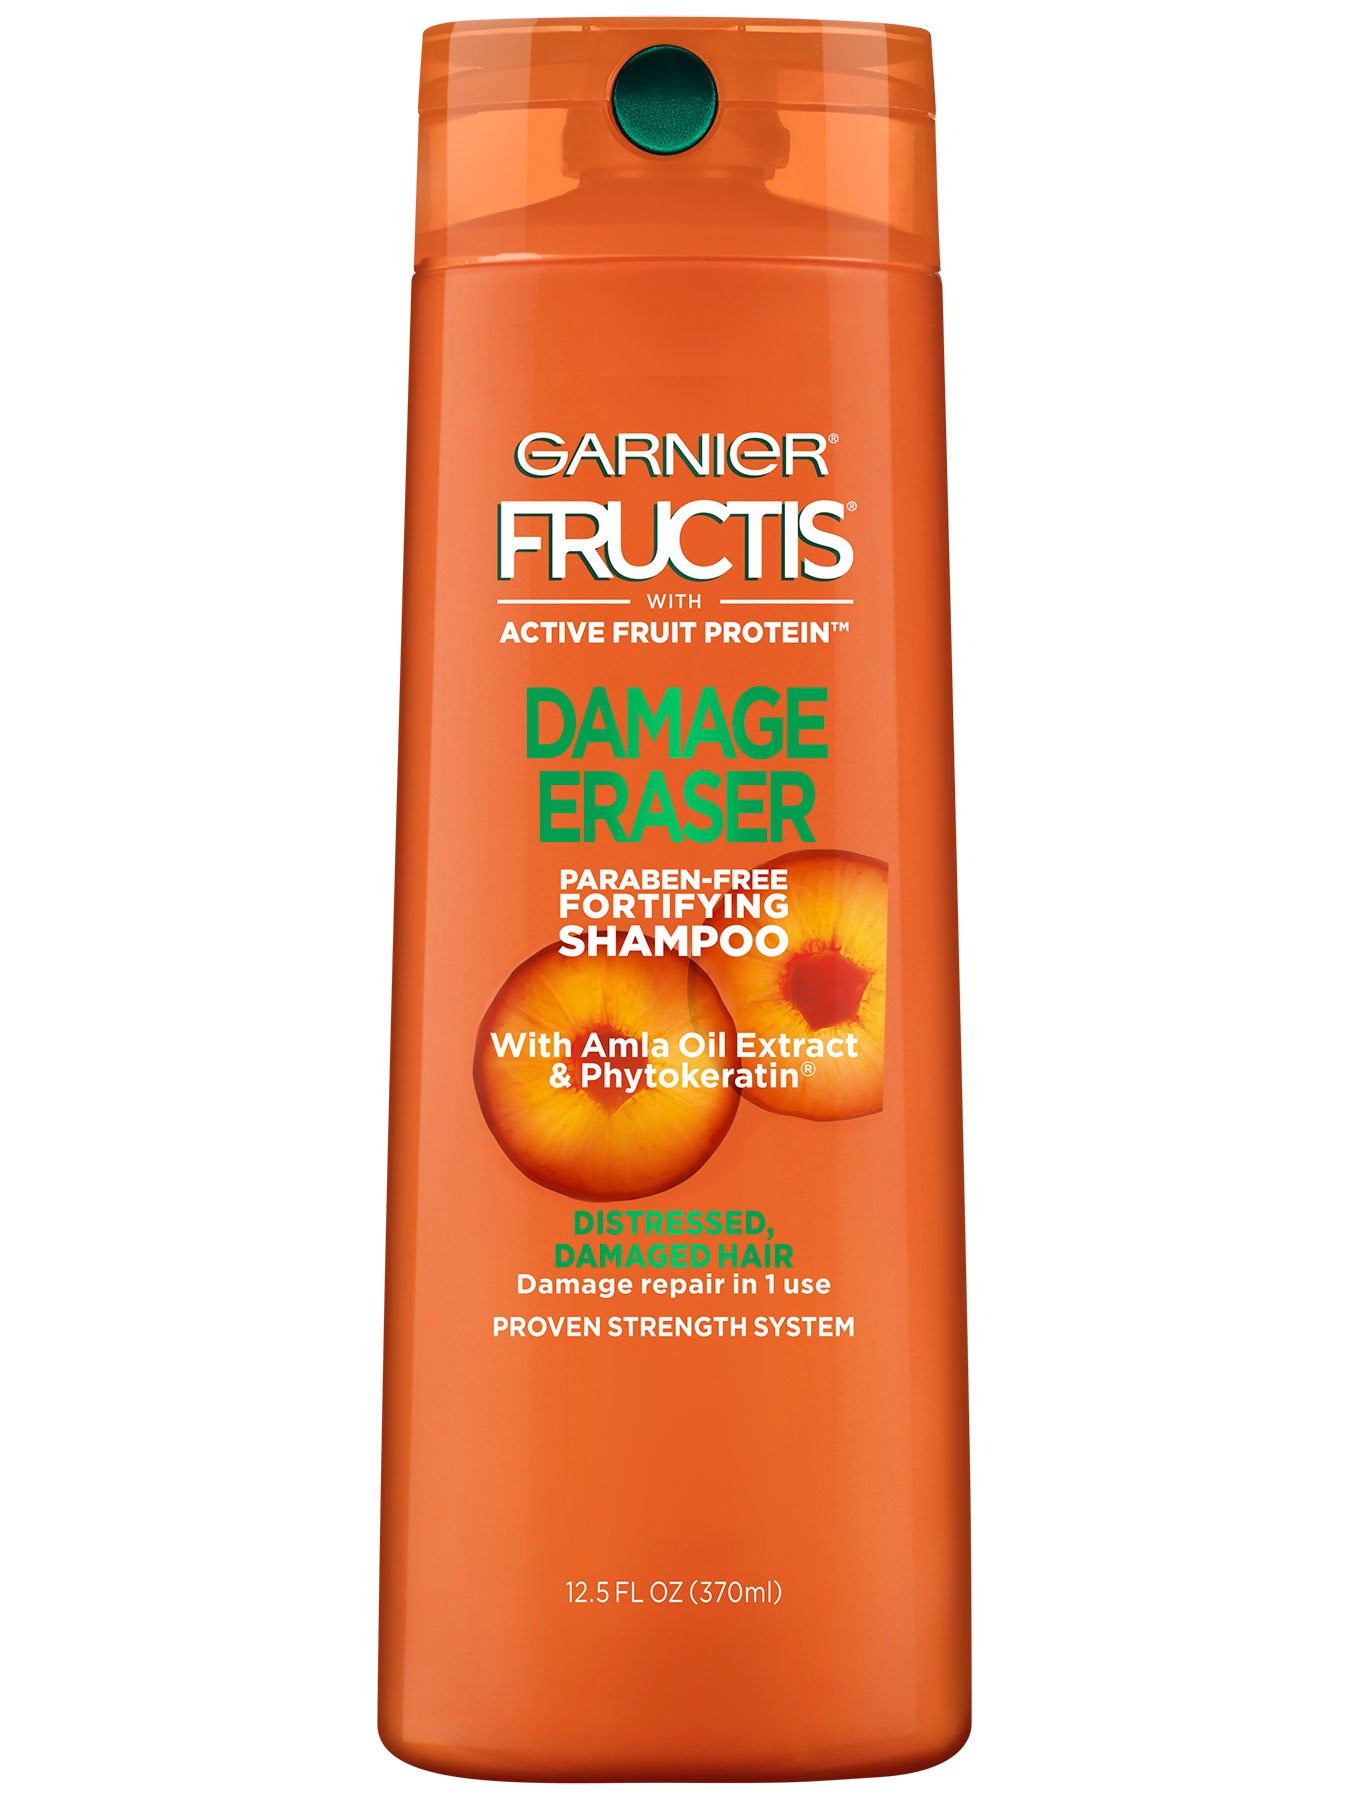 instant Interactie Middellandse Zee Damage Eraser Shampoo for Damaged Hair - Garnier Fructis